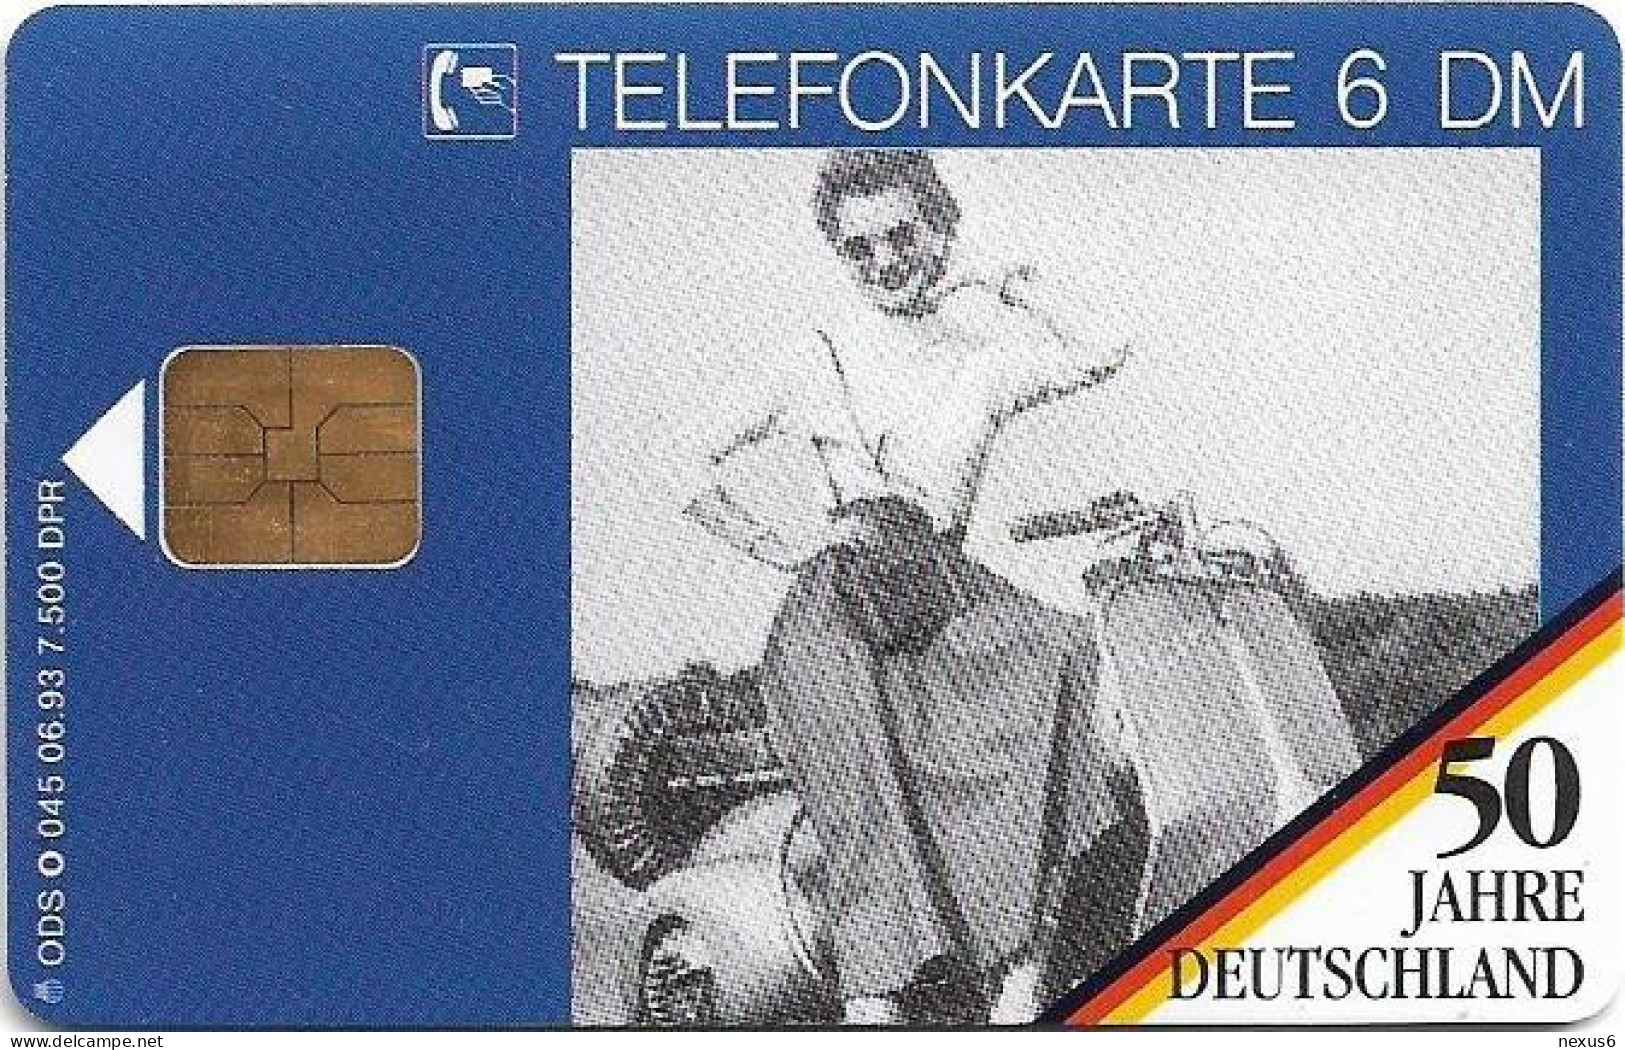 Germany - 50 Jahre Deutschland - Picknick Mit Motorroller 2 - O 0045 - 06.1993, 6DM, 7.500ex, Mint - O-Series : Series Clientes Excluidos Servicio De Colección